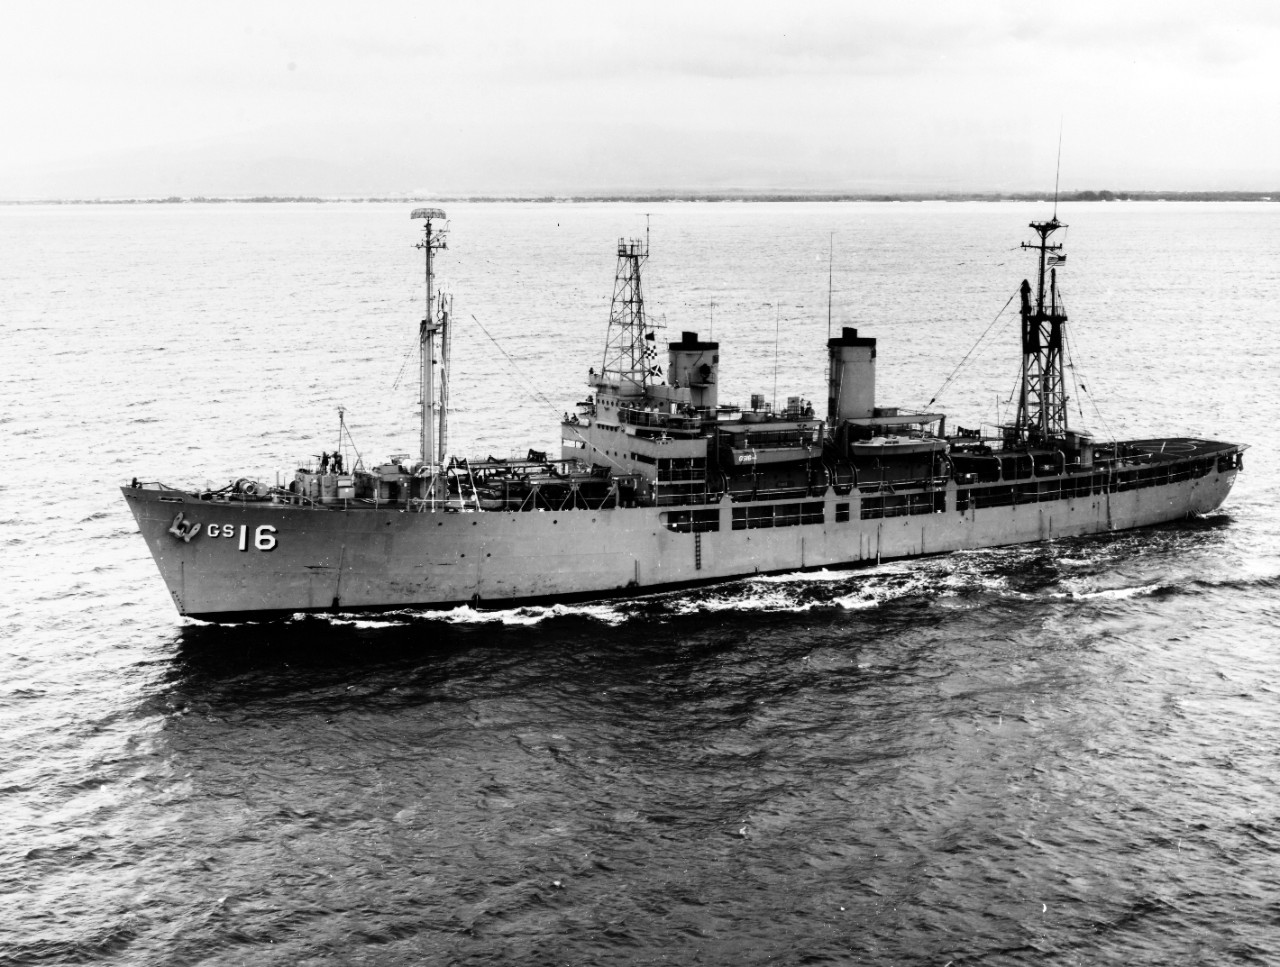 USS MAURY (AGS-16)